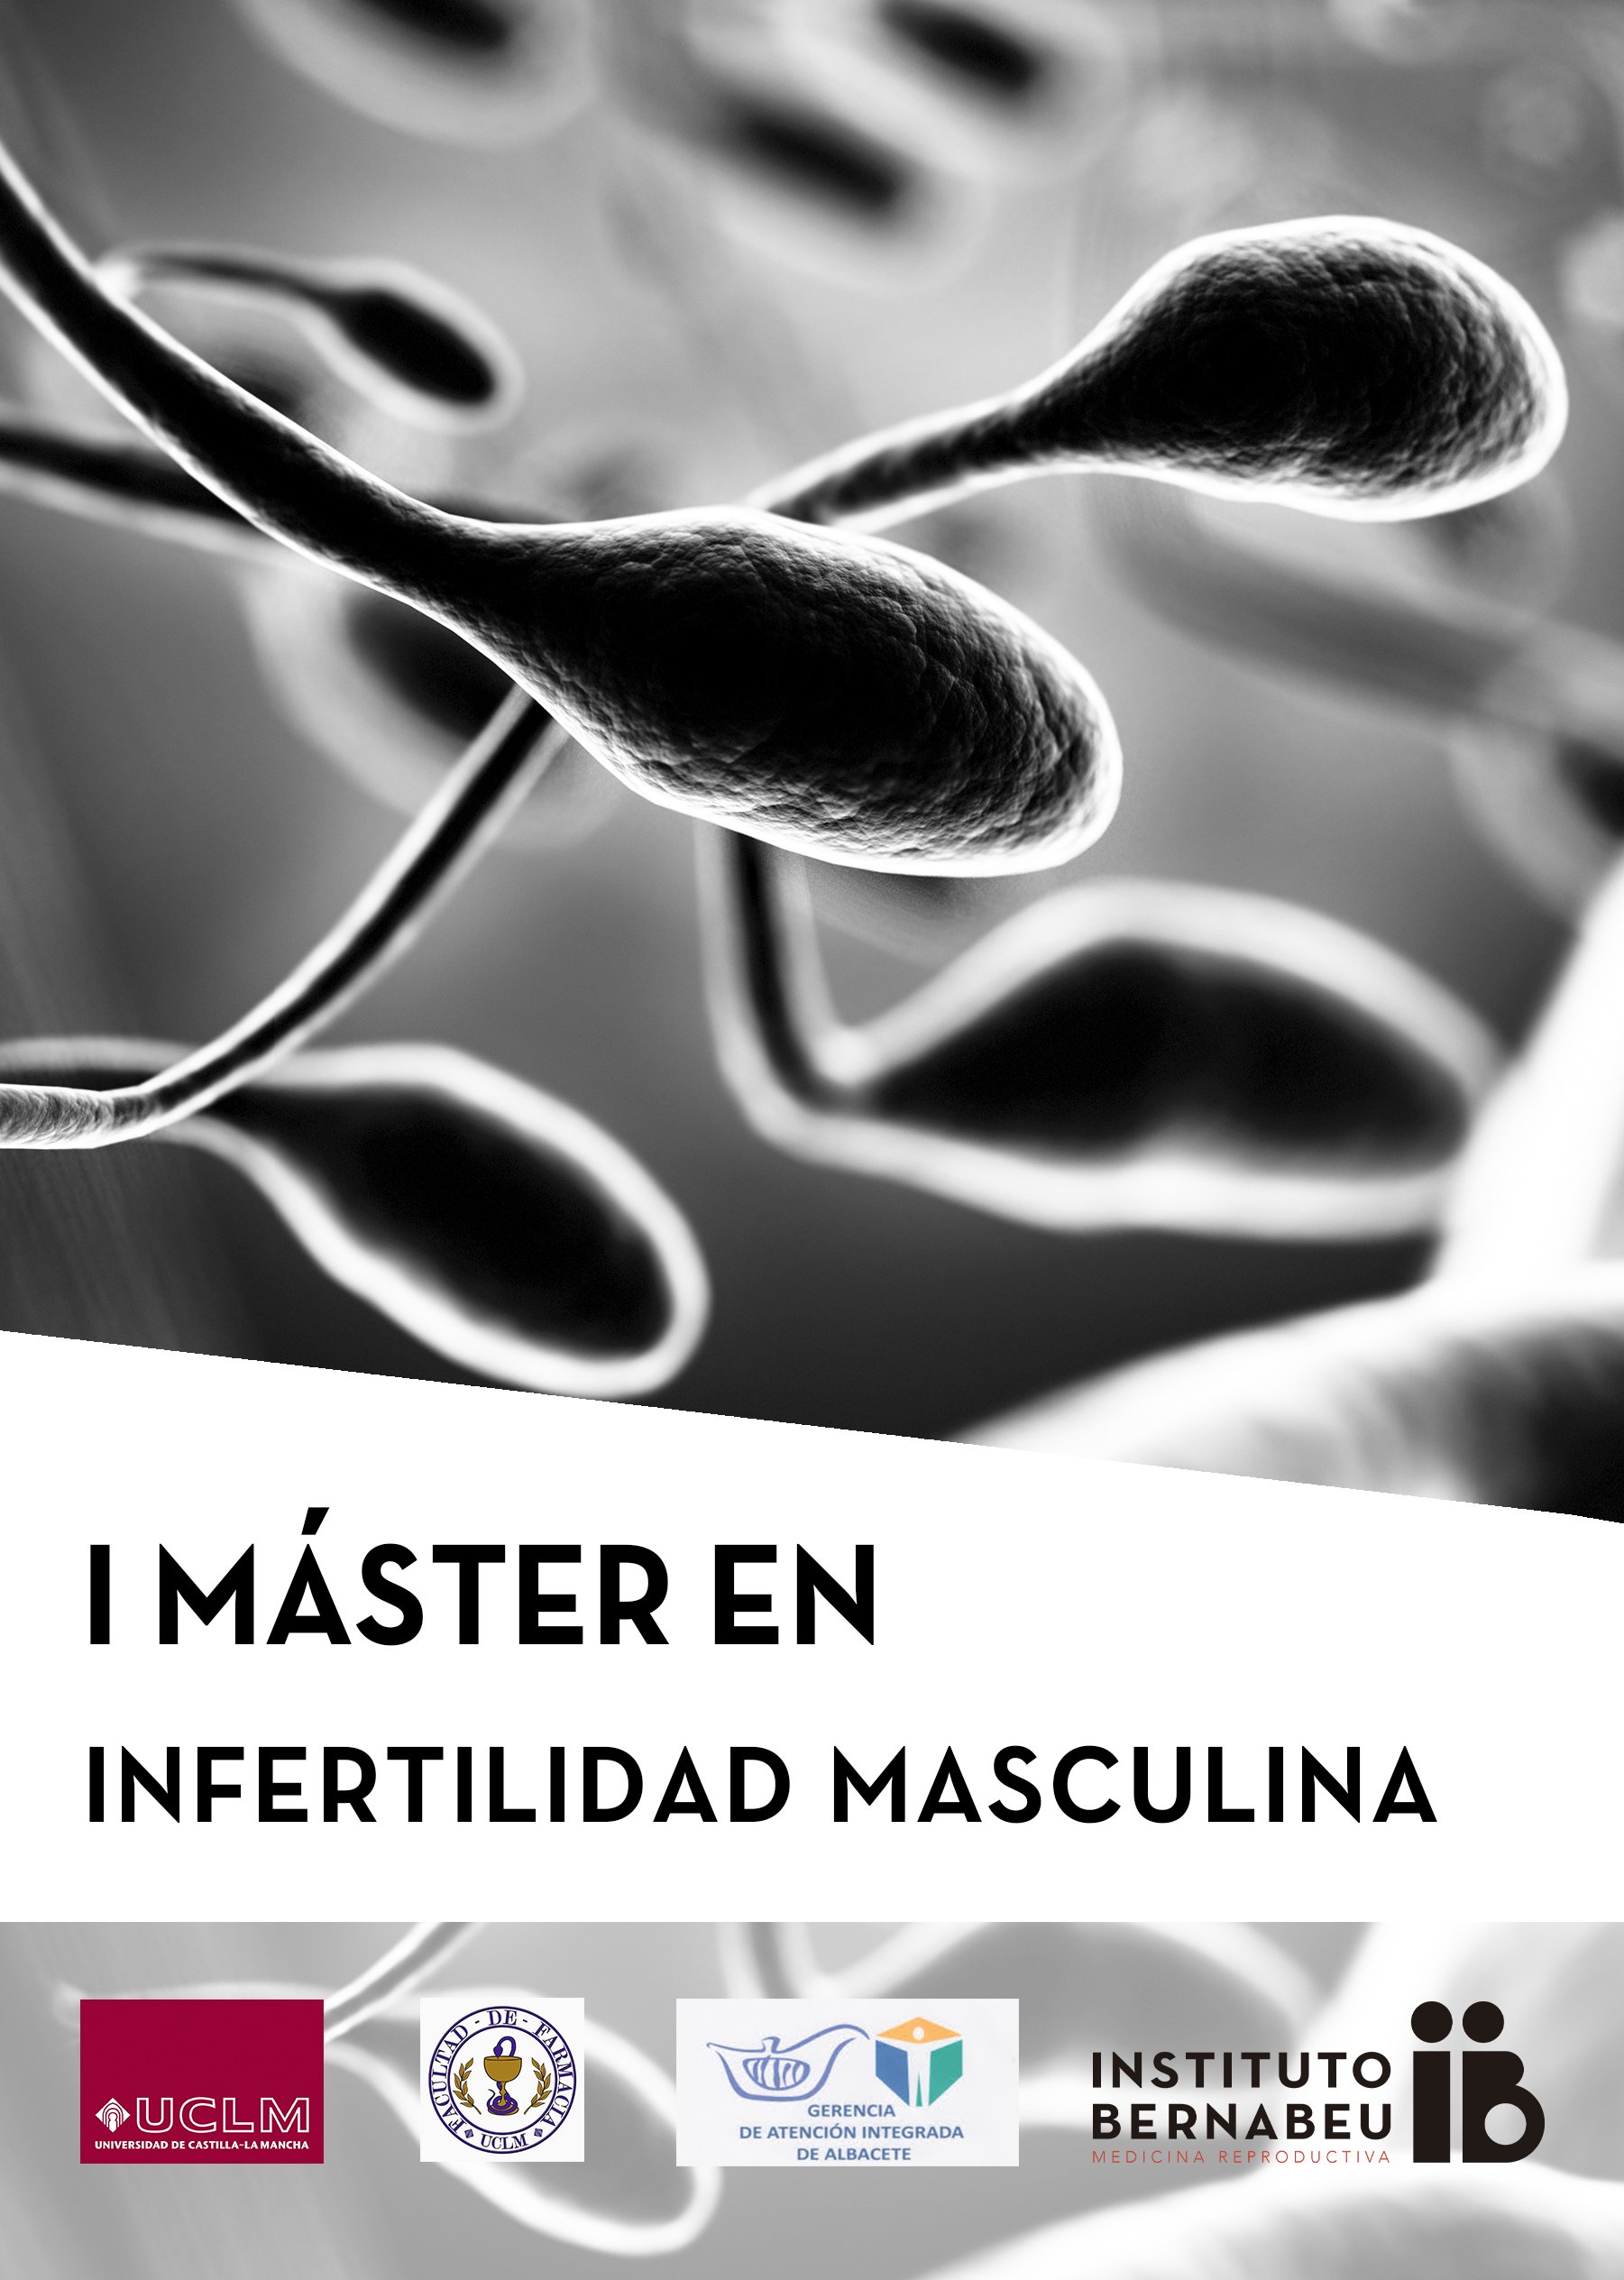 1. Master-Abschluss in Männliche Infertilität am Instituto Bernabeu – Universität Castilla la Mancha